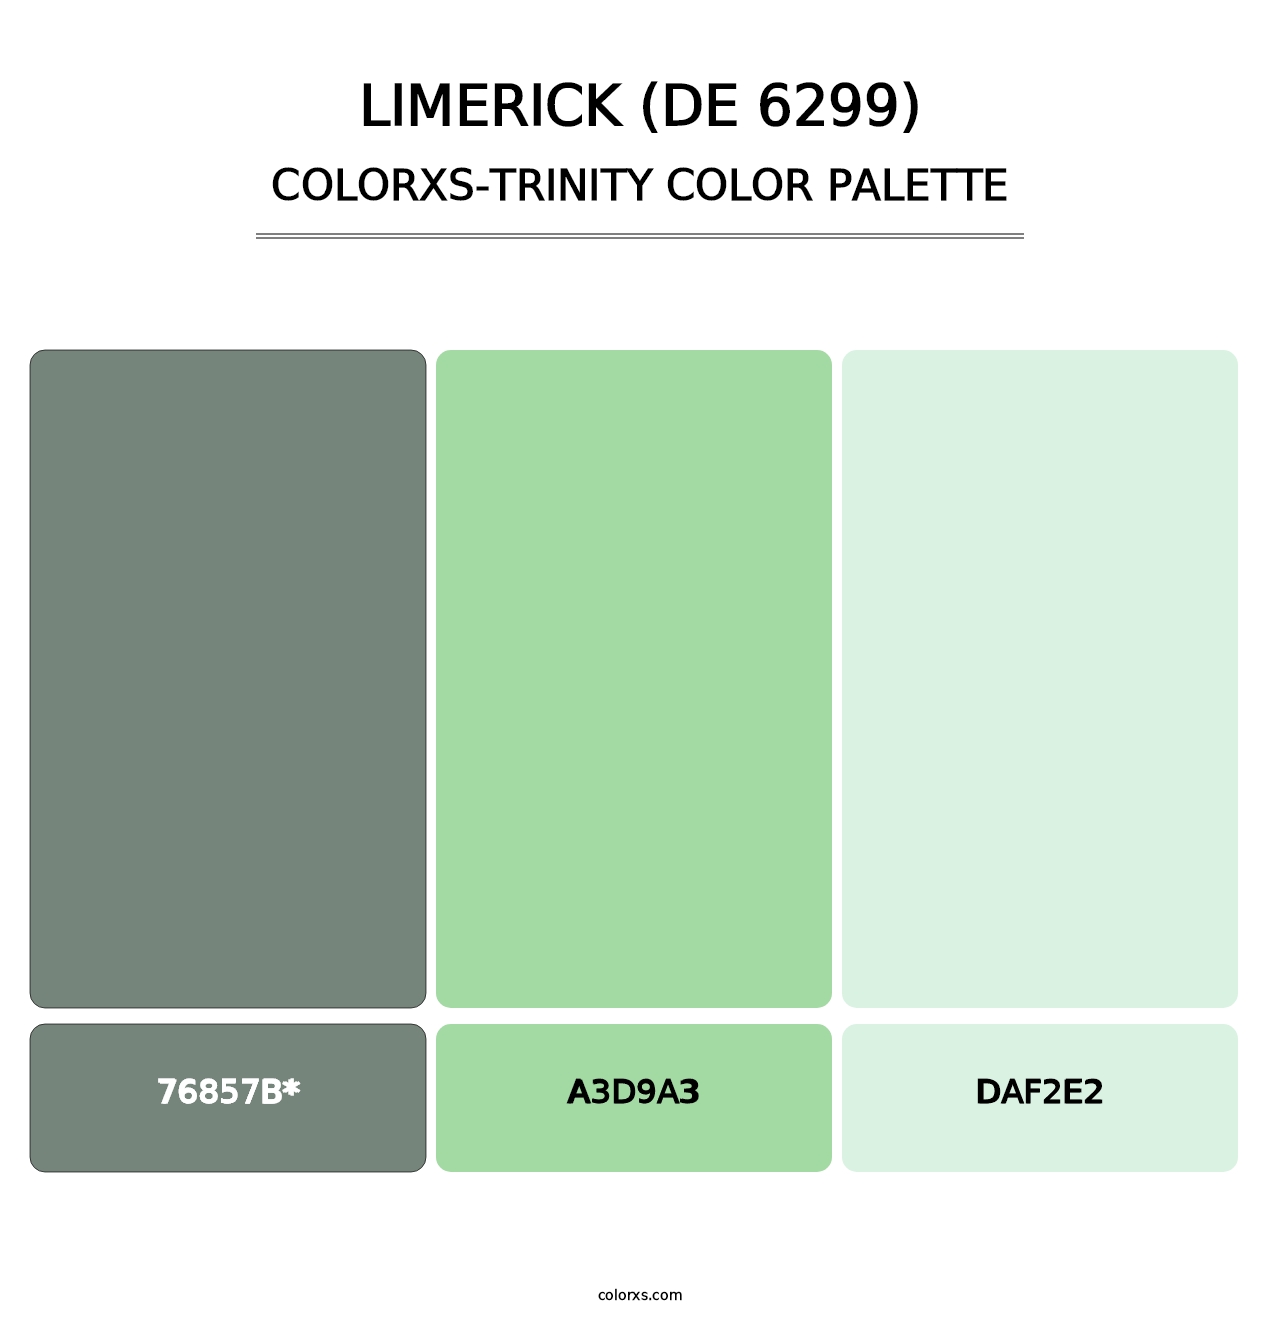 Limerick (DE 6299) - Colorxs Trinity Palette